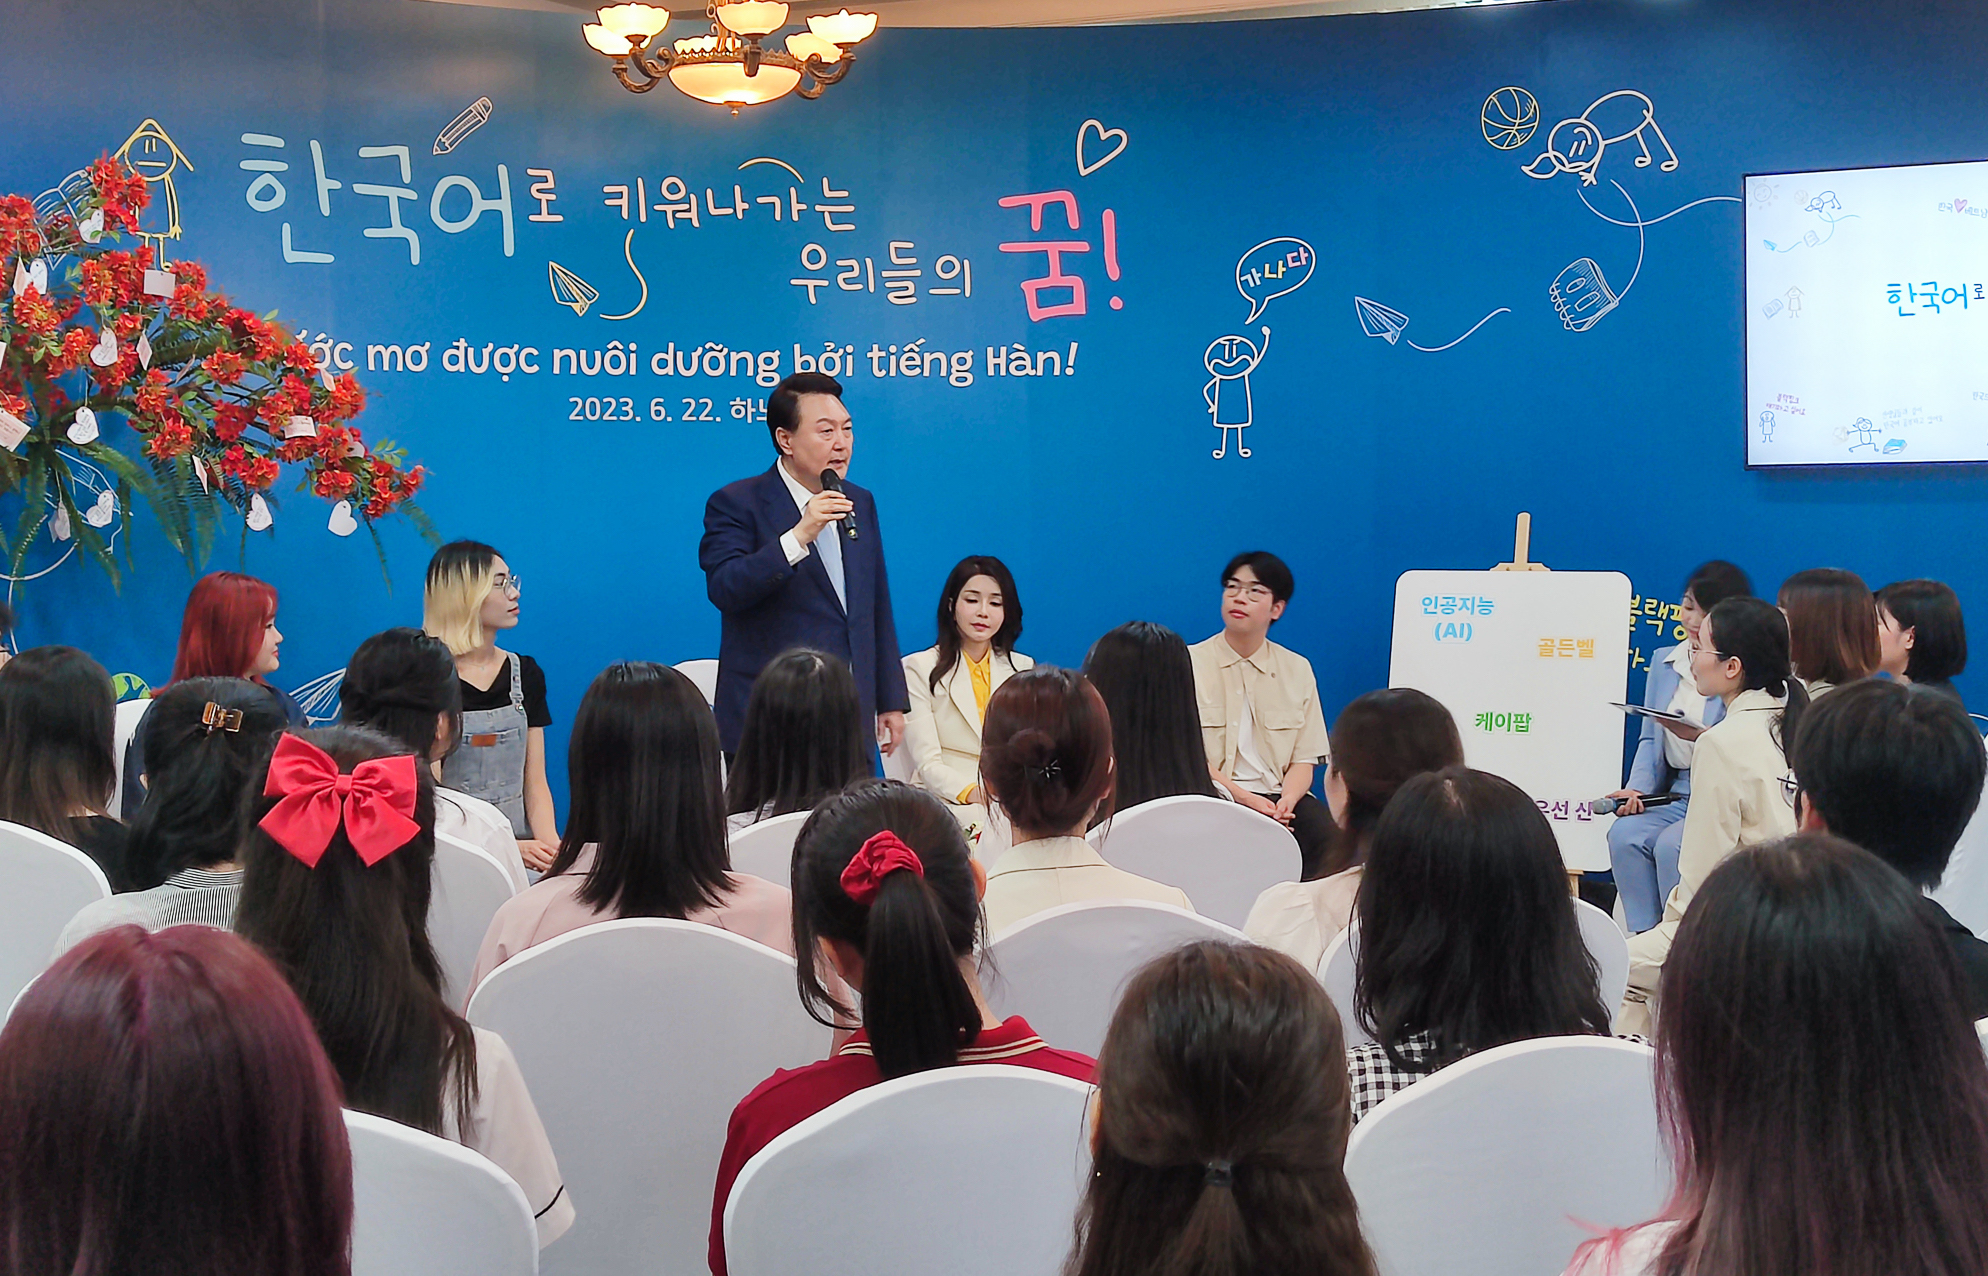 Tổng thống Hàn Quốc Yoon Suk Yeol giao lưu với sinh viên ĐHQGHN ảnh 1